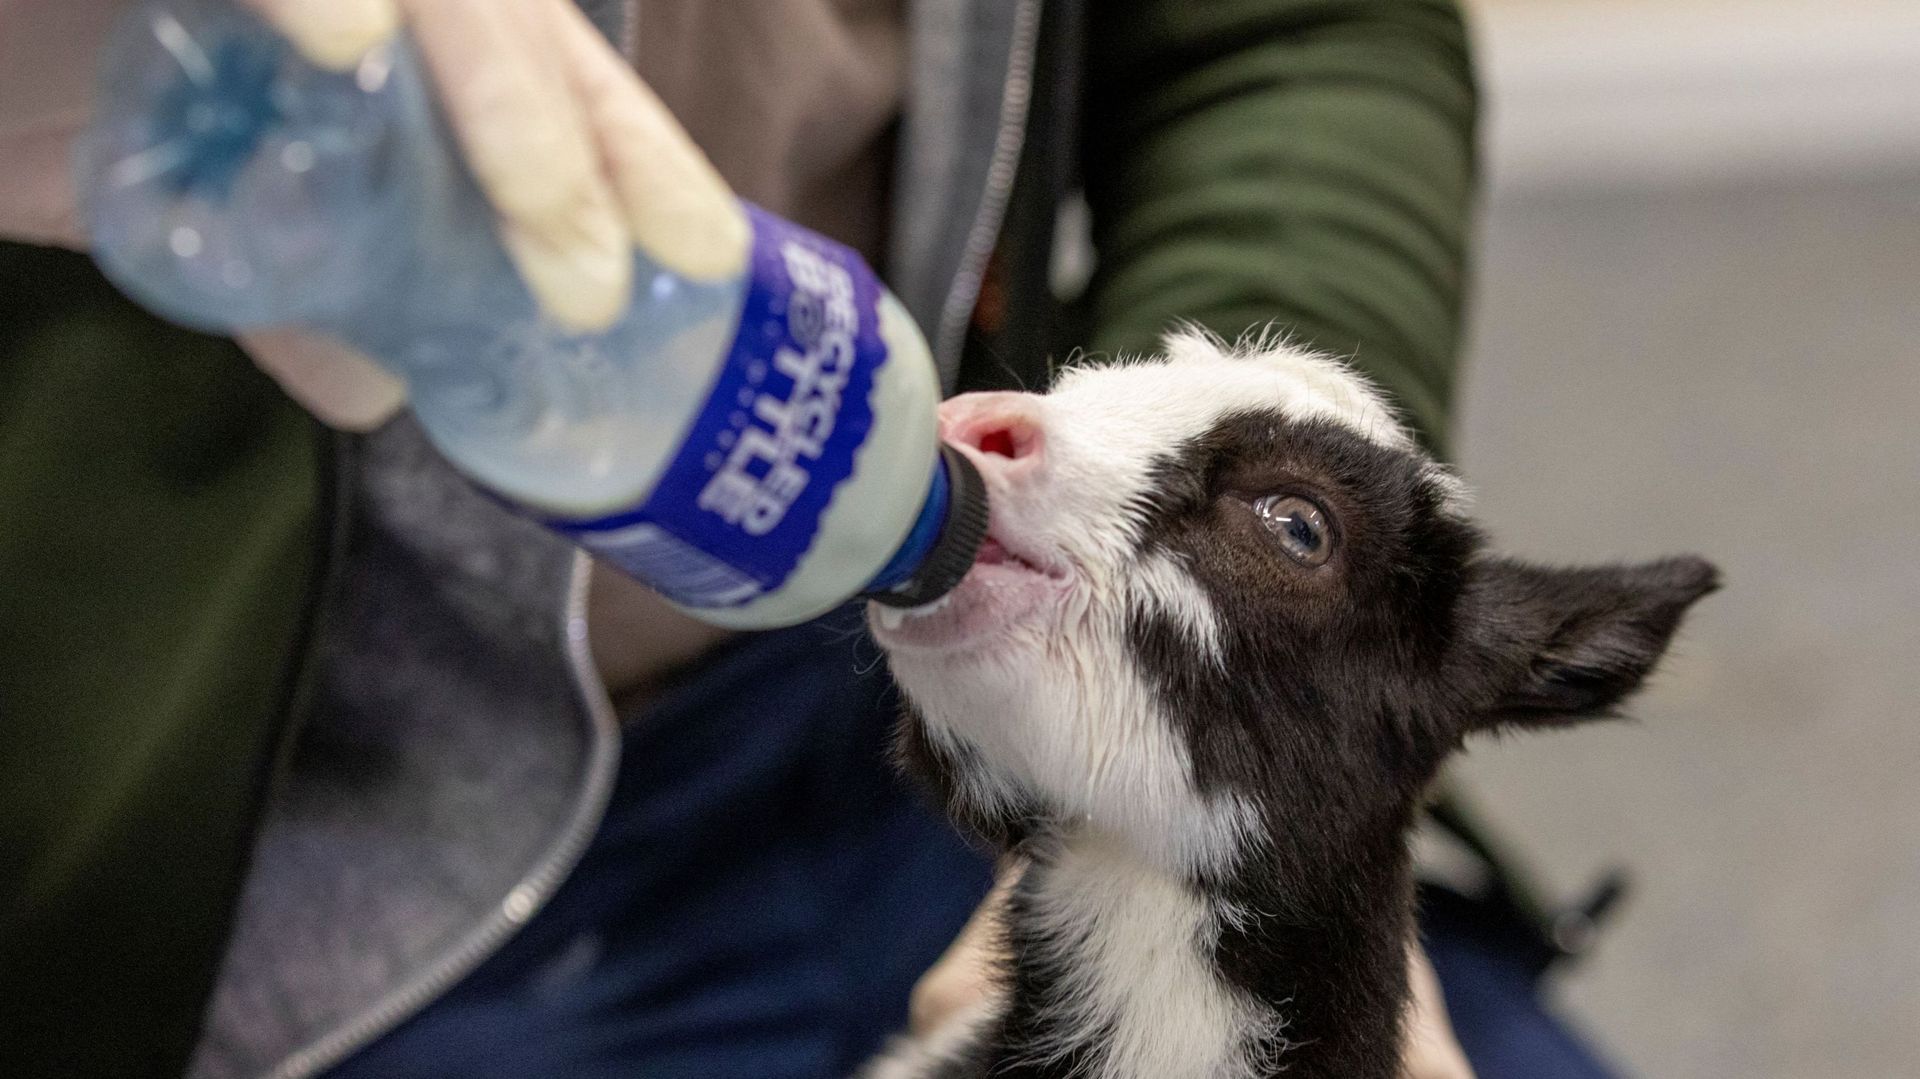 A cause de la pandémie, un pub irlandais se reconvertit en clinique pour animaux sauvages